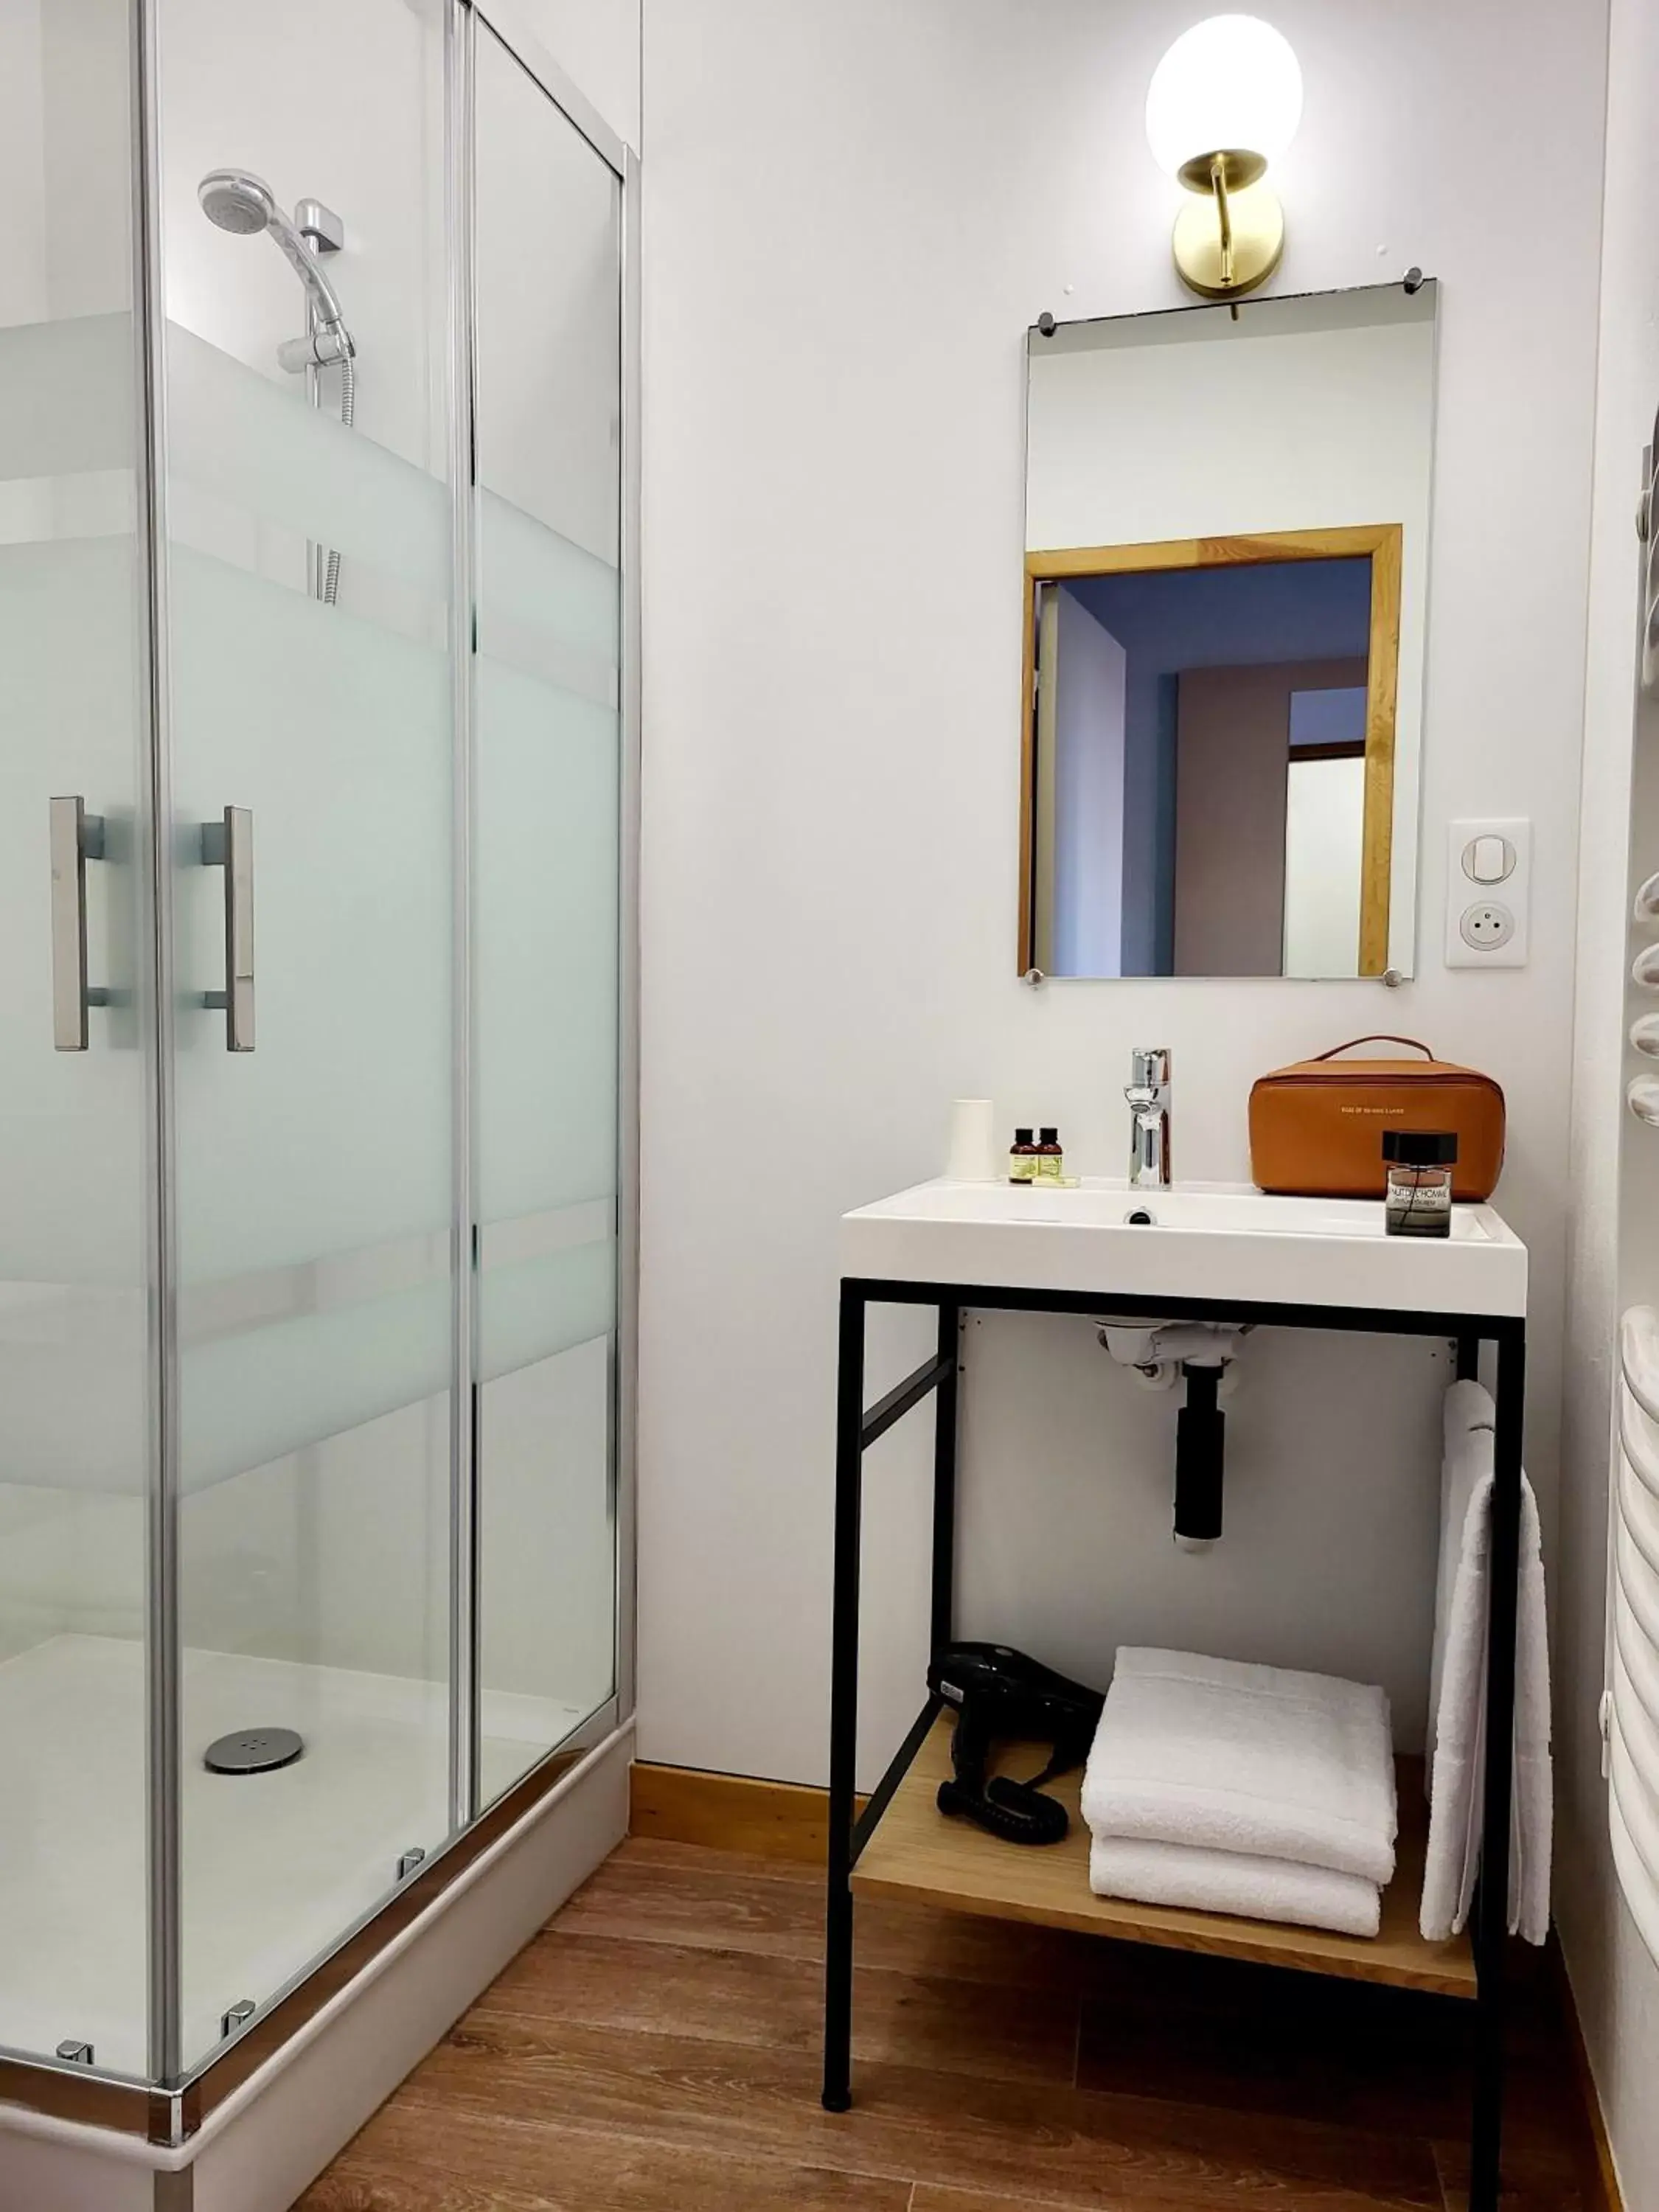 Shower, Bathroom in Mage hôtels - Hôtel la grenette - Brasserie Bonté Divine